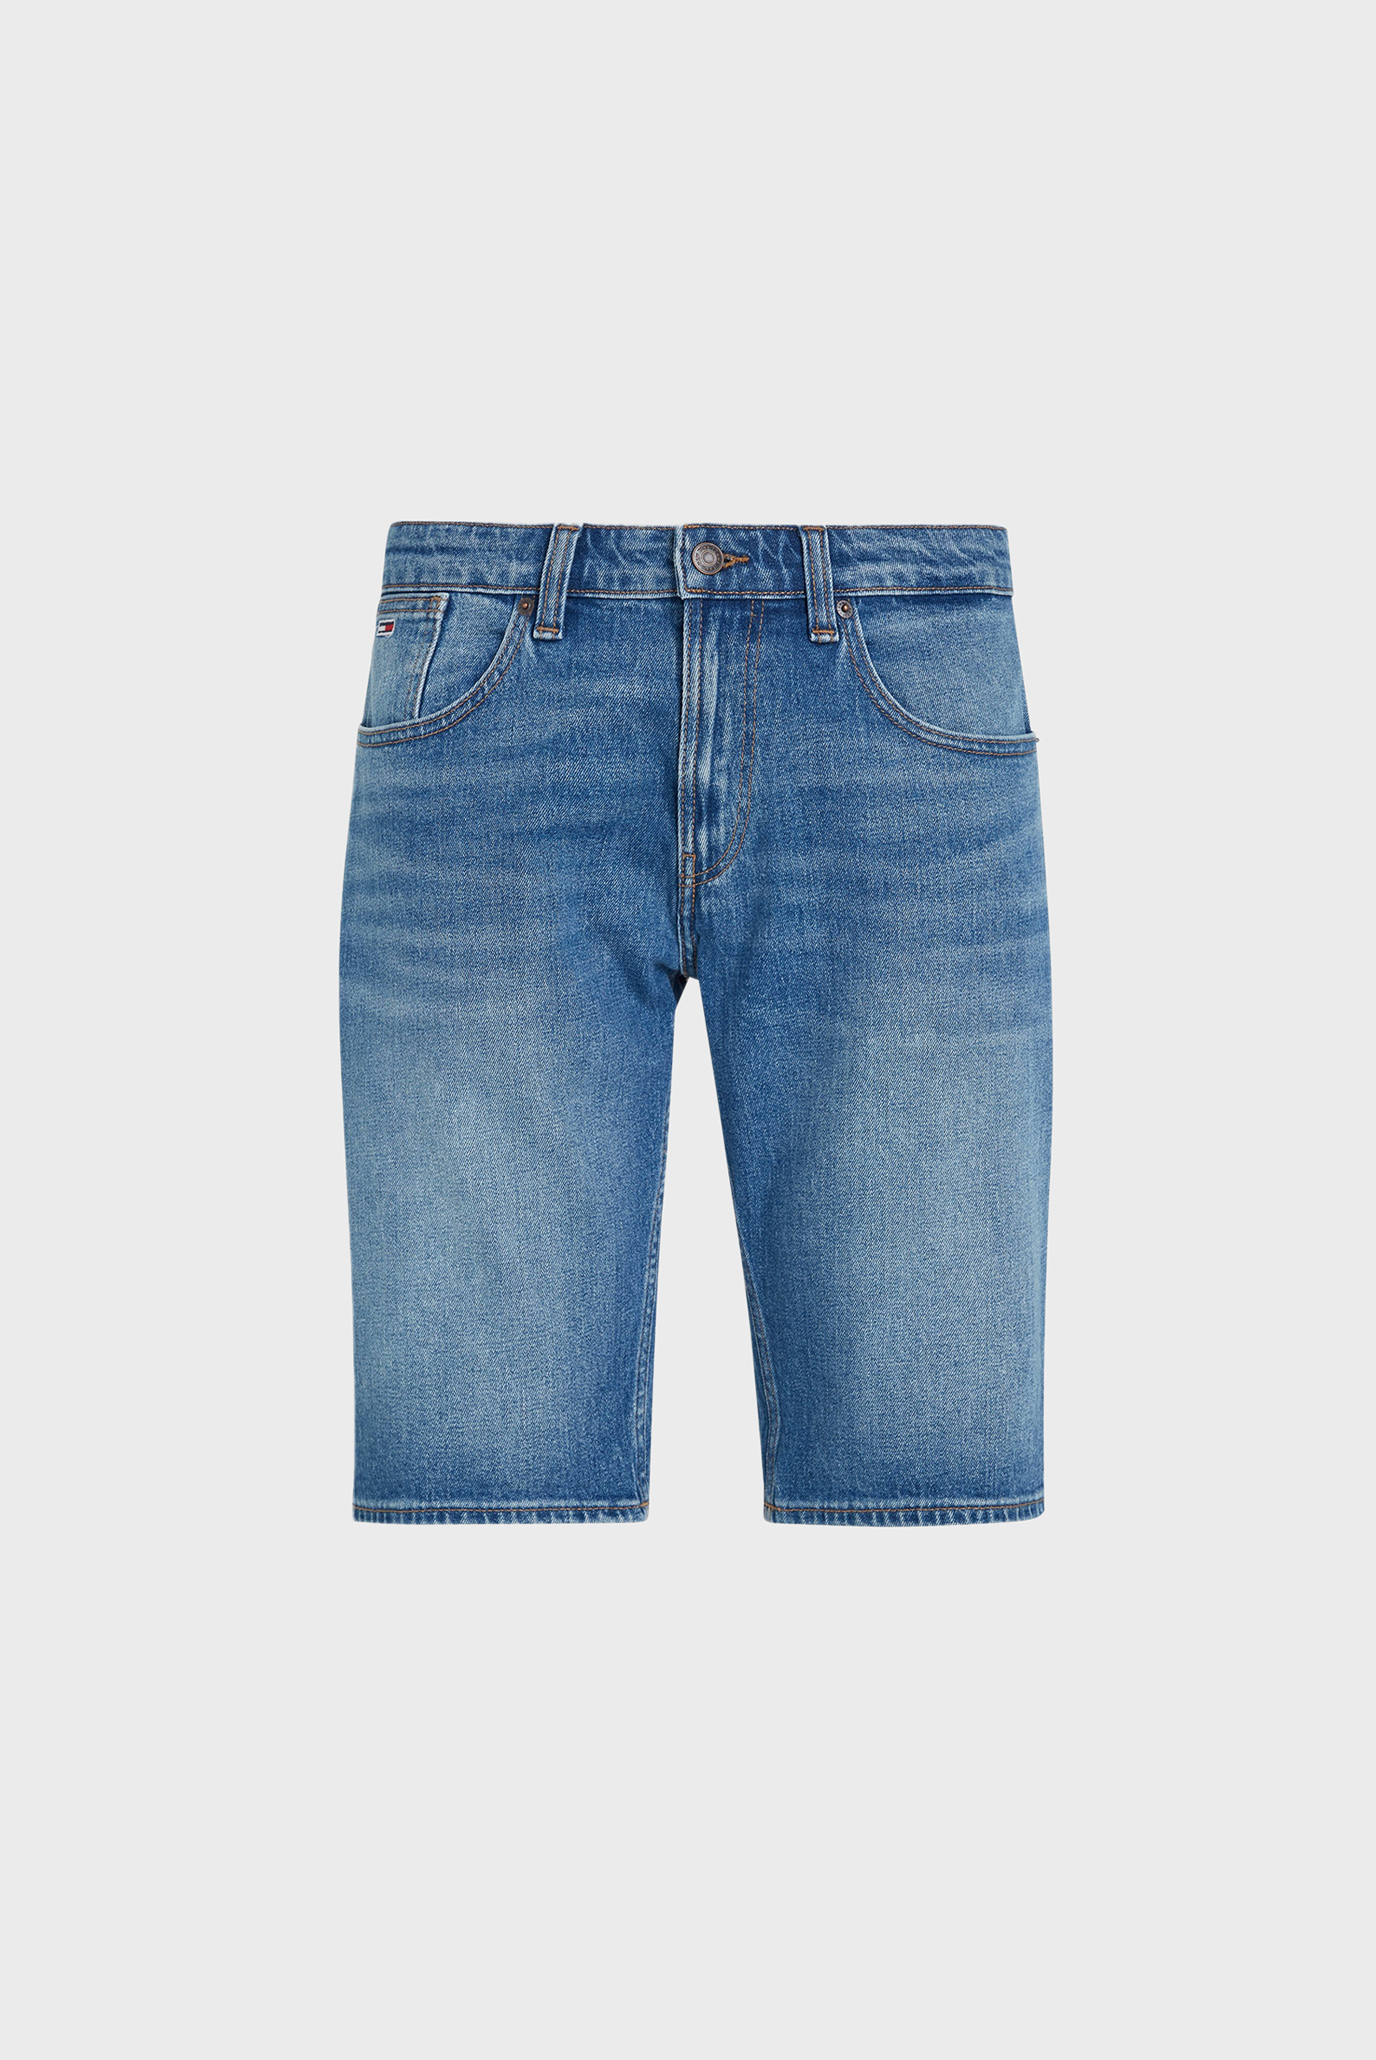 Мужские синие джинсовые шорты RONNIE 1